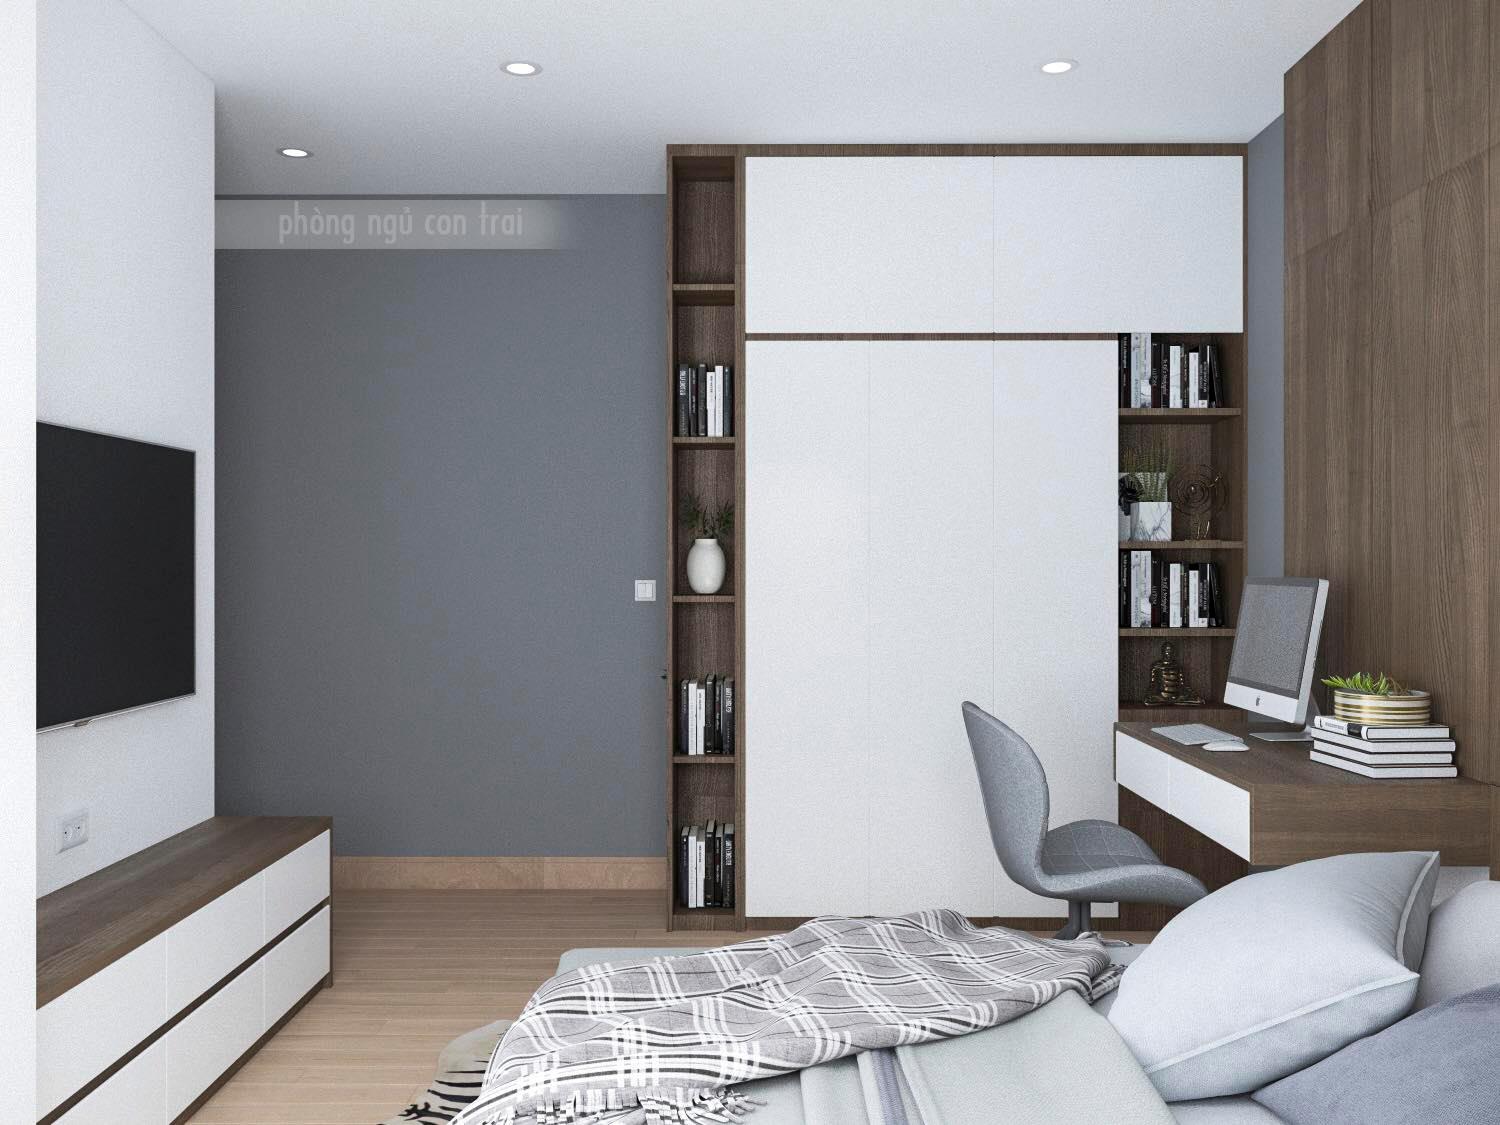 Thiết kế nội thất phòng ngủ được xem như một nghệ thuật, với mục đích tạo ra một không gian sống tối ưu và hài hòa. Với chúng tôi, Thiết kế nội thất phòng ngủ là một sự kết hợp giữa phong cách hiện đại và tinh tế. Trong bức ảnh, bạn sẽ cảm nhận được sự tinh xảo và công phu trong việc lựa chọn và bố trí đồ nội thất. Hãy để chúng tôi giúp bạn tạo ra một không gian sống mới với Thiết kế nội thất phòng ngủ hoàn hảo này.